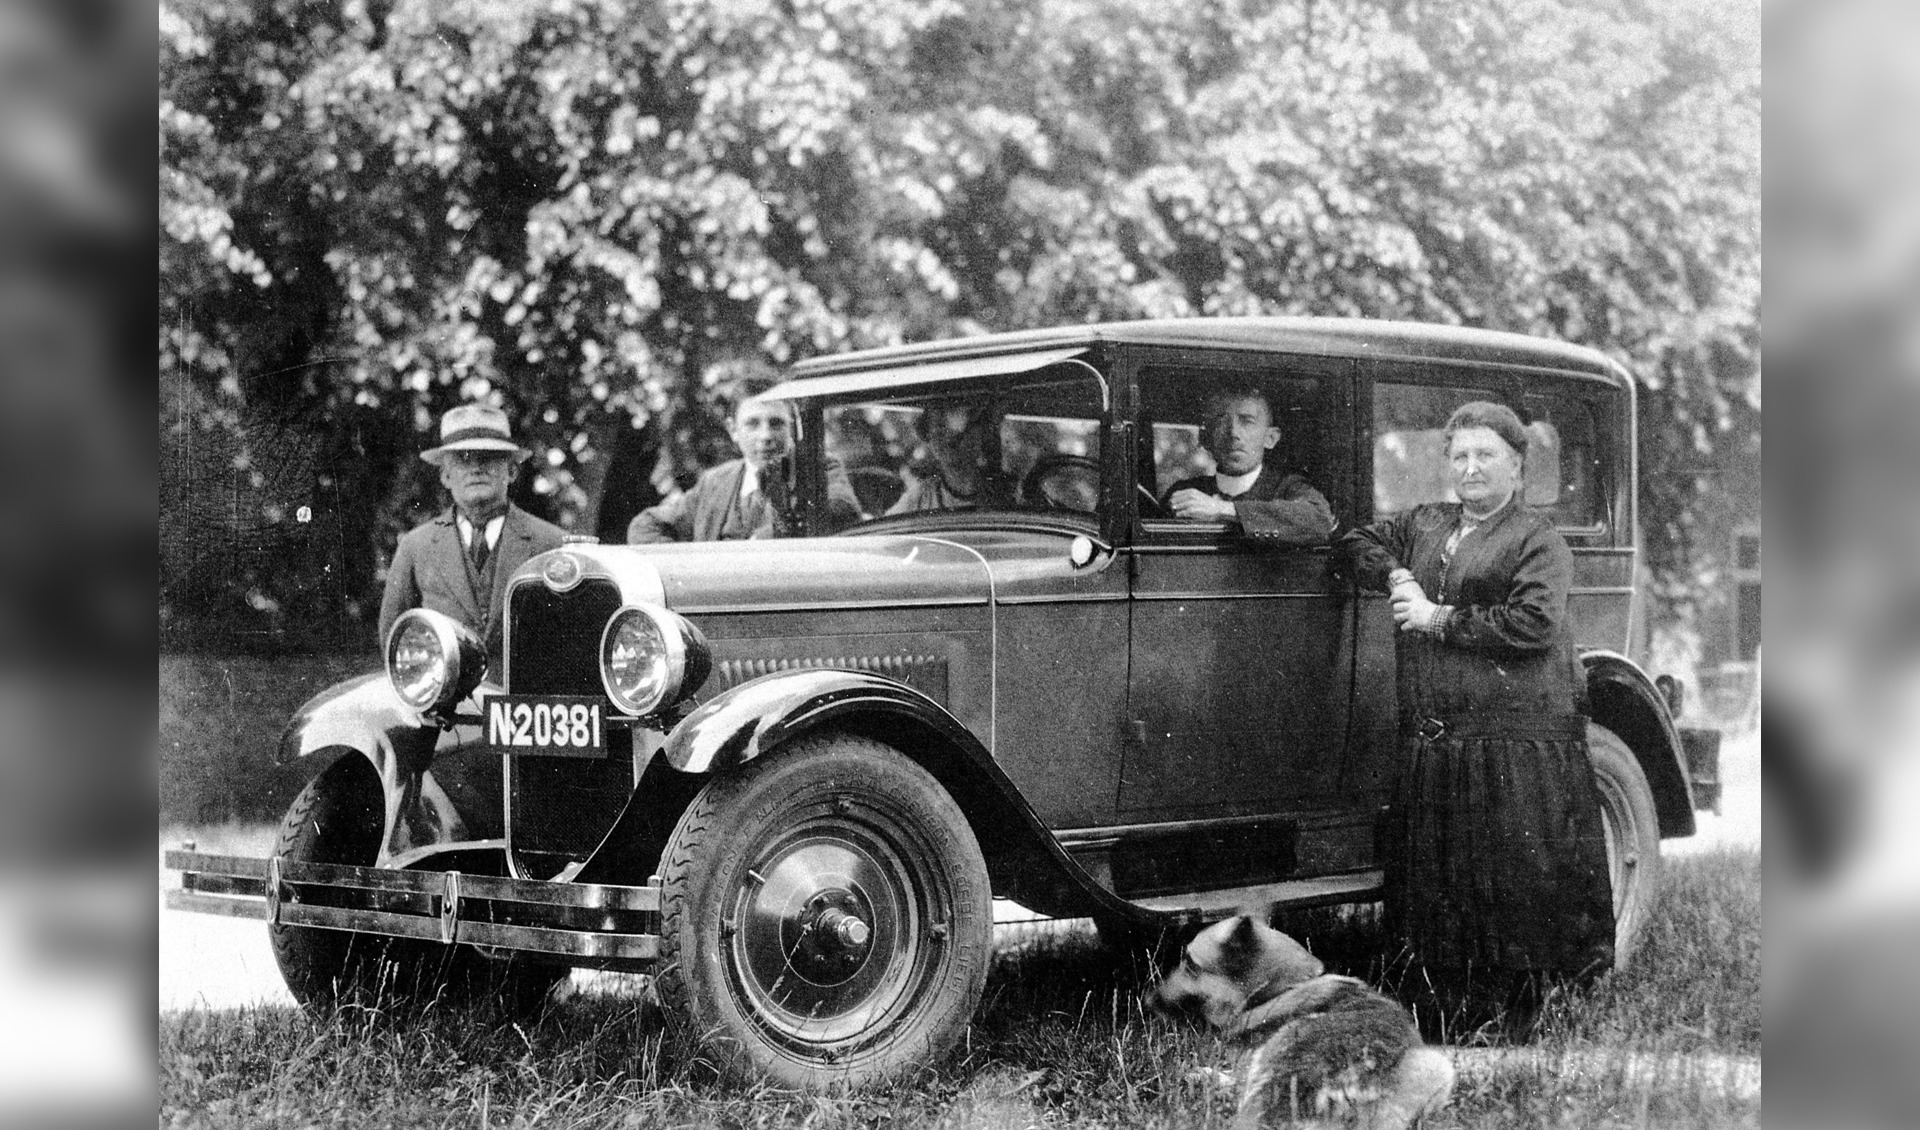 De eerste in Reek die zich de luxe van een eigen auto kon permitteren was burgemeester Wientjes. Het was een Ford Sedan V8, geleverd door garage Nefkens in Gennep in 1932. 